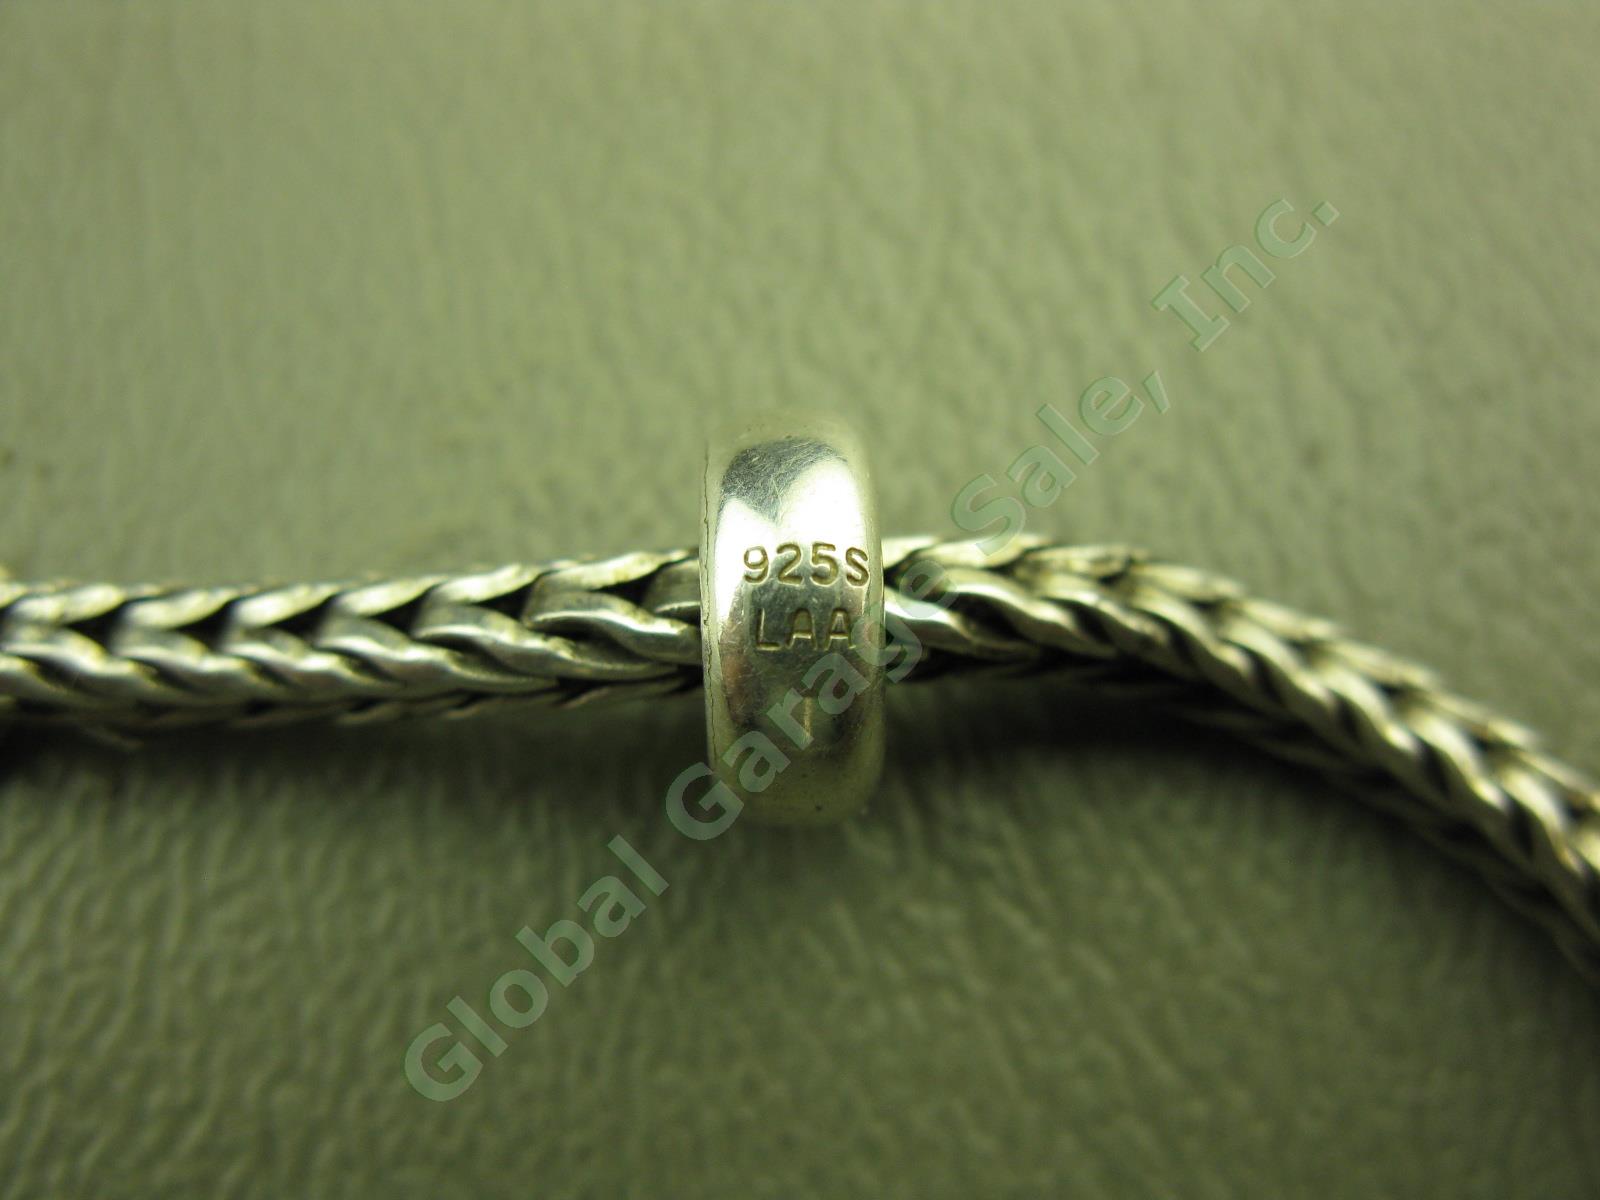 Trollbeads LAA 925 S Sterling Silver Bracelet Swan Lock Chamilia Charm Beads Lot 10